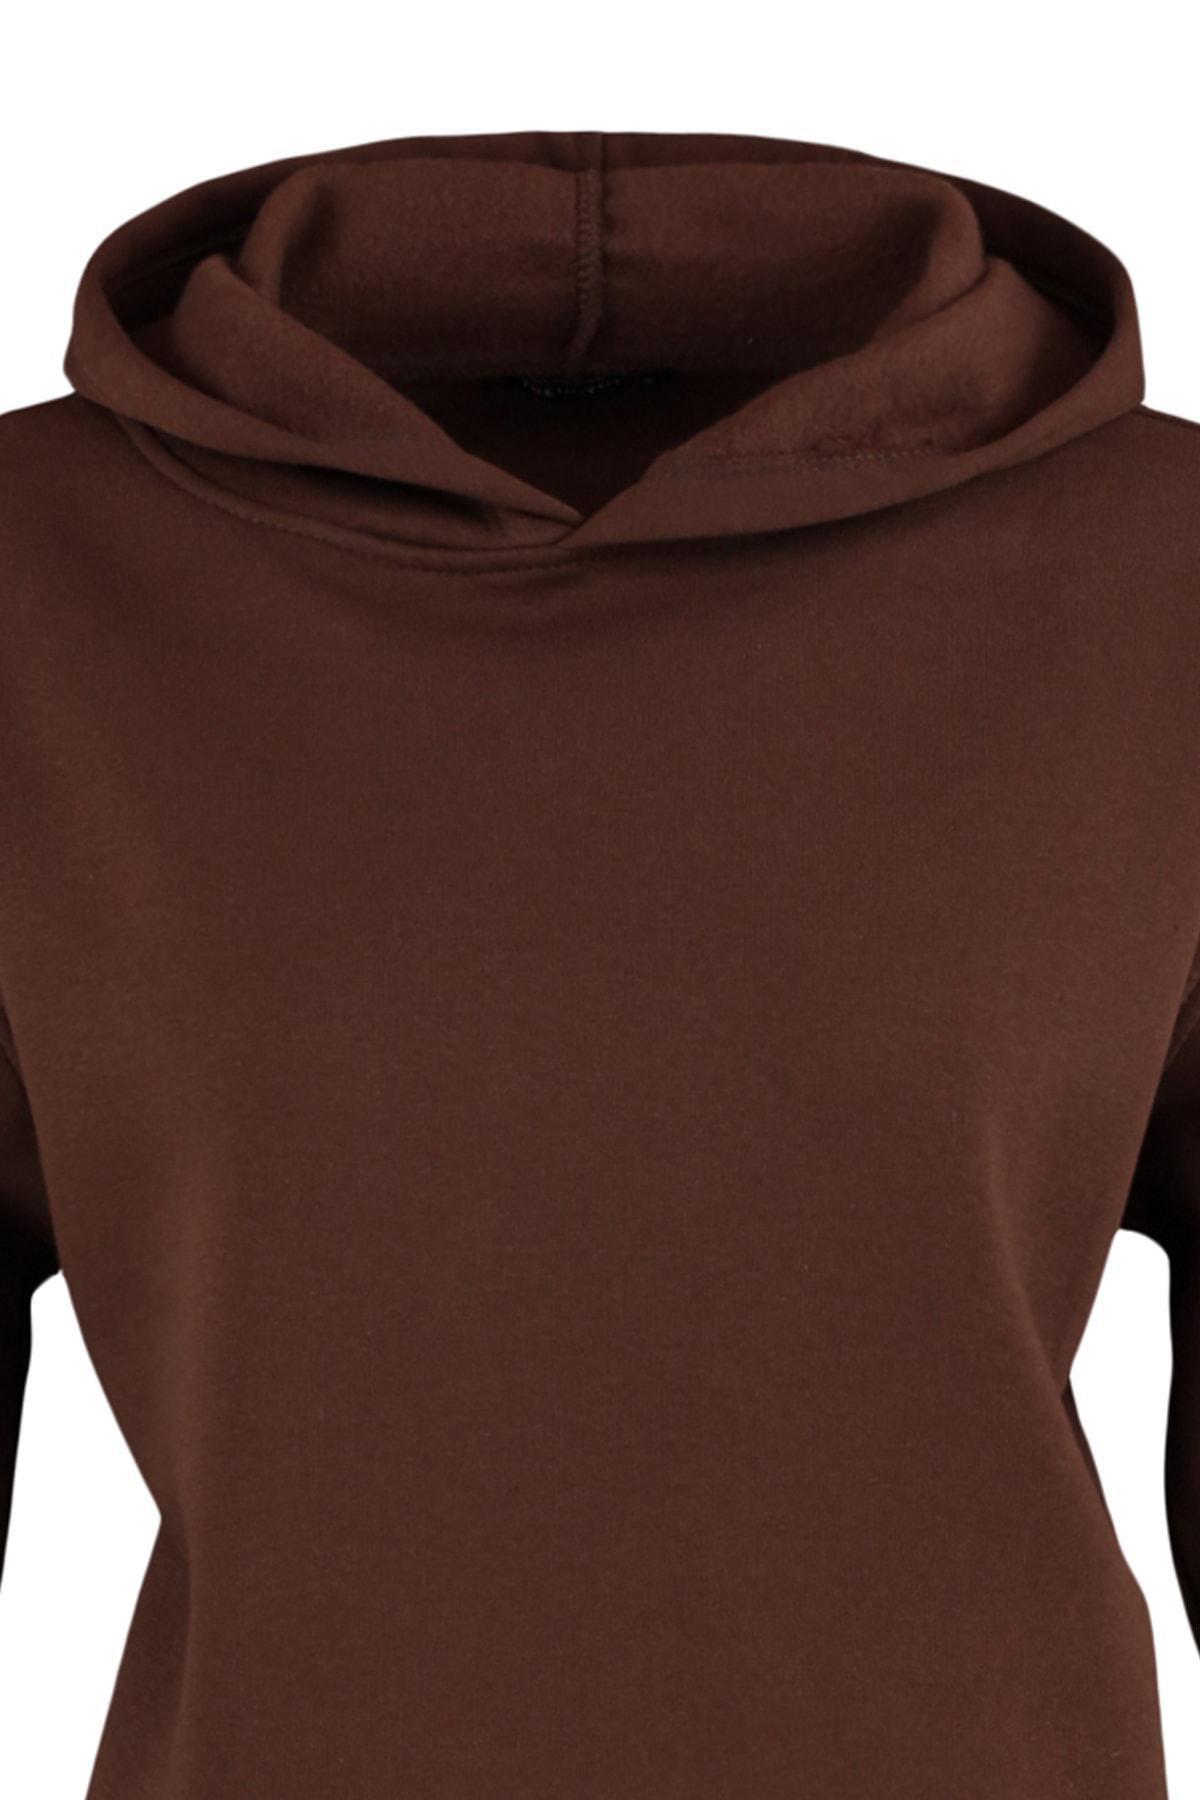 Trendyol - Brown Plain Hooded Sweatshirt